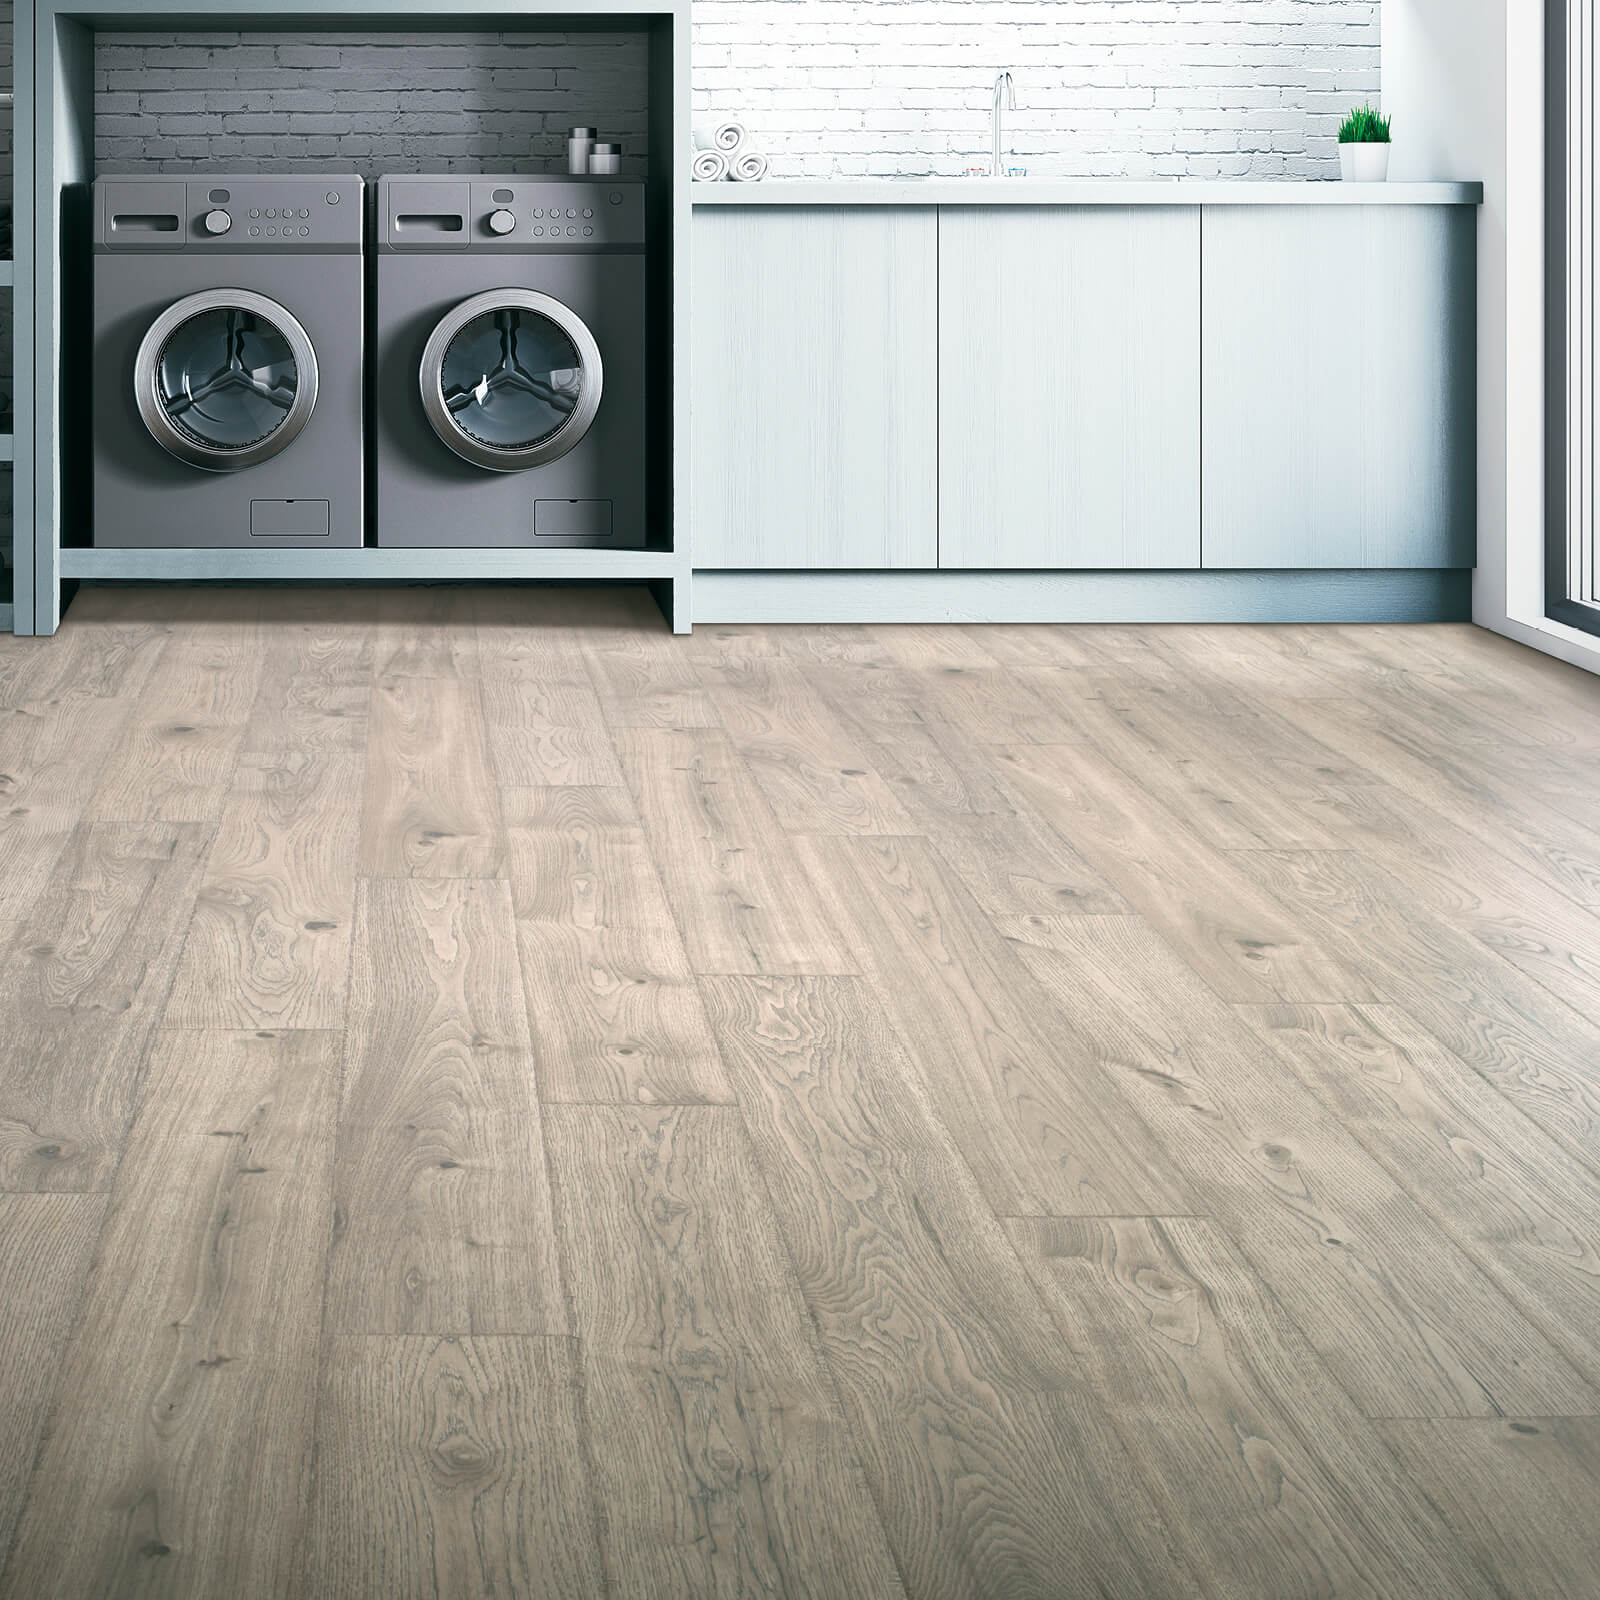 Laundry room Laminate flooring | Karen's Advance Floors